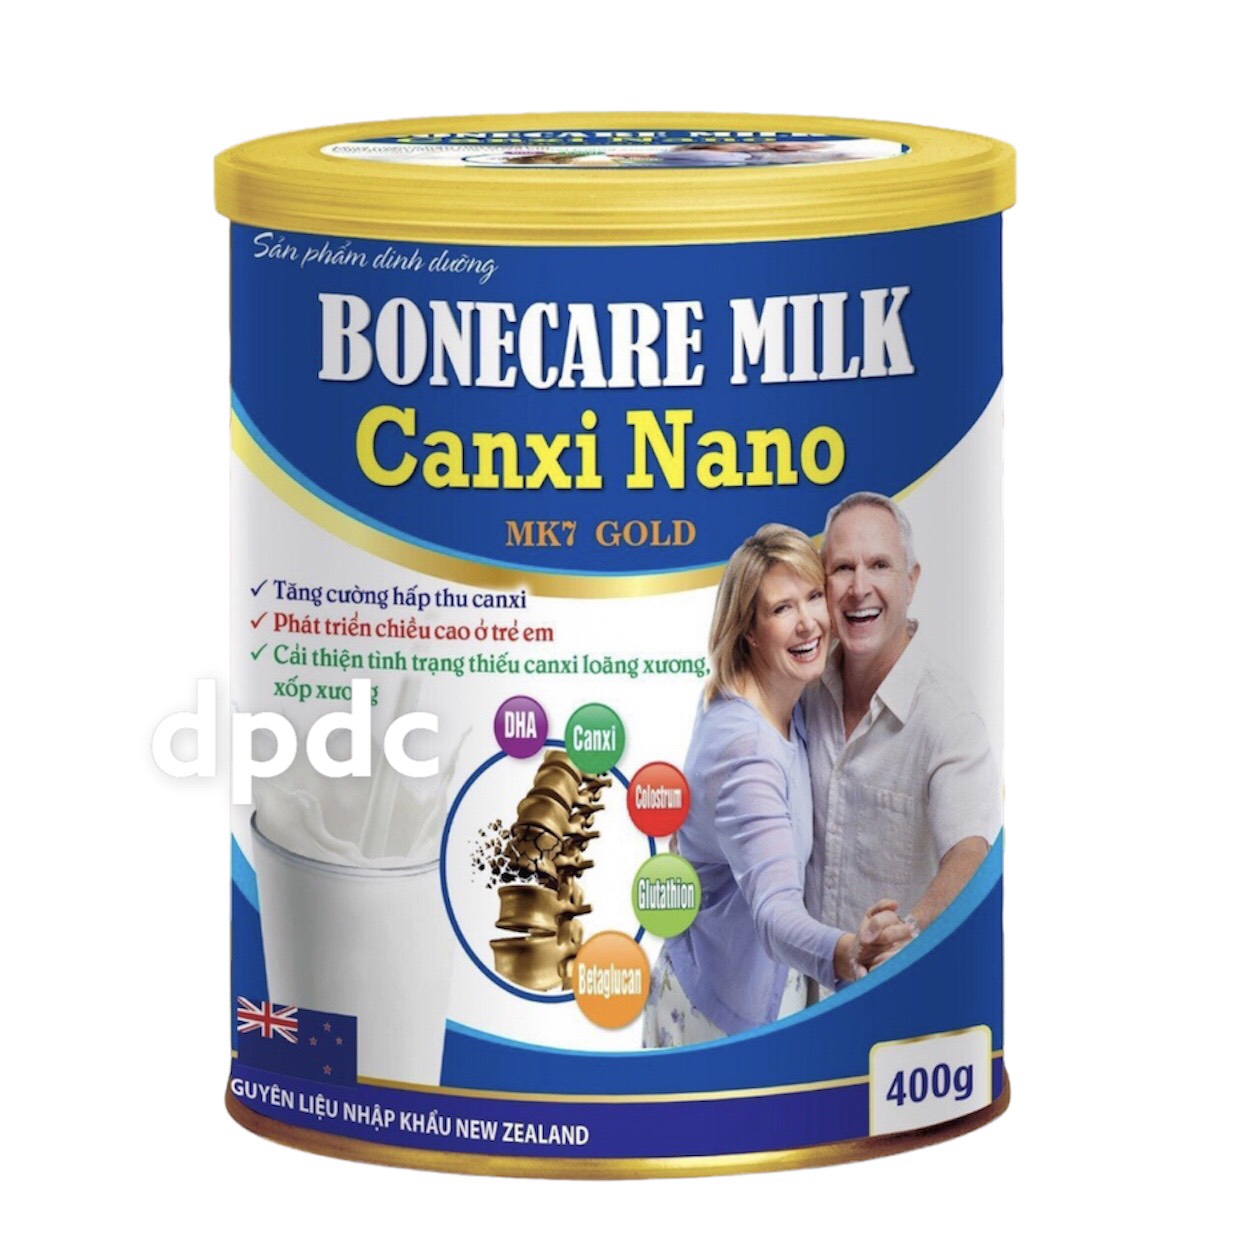 [Hộp 400g] Sữa Bột Tăng Chiều Cao Bonecare Milk Canxi Nano MK7 Gold- Tăng Cường Hấp Thu Canxi, Phát Triển Chiều Cao Ở Trẻ Em, Cải Thiện Tình Trạng thiếu Canxi, Loãng Xương, xốp xương - Bách Hóa Duy Công